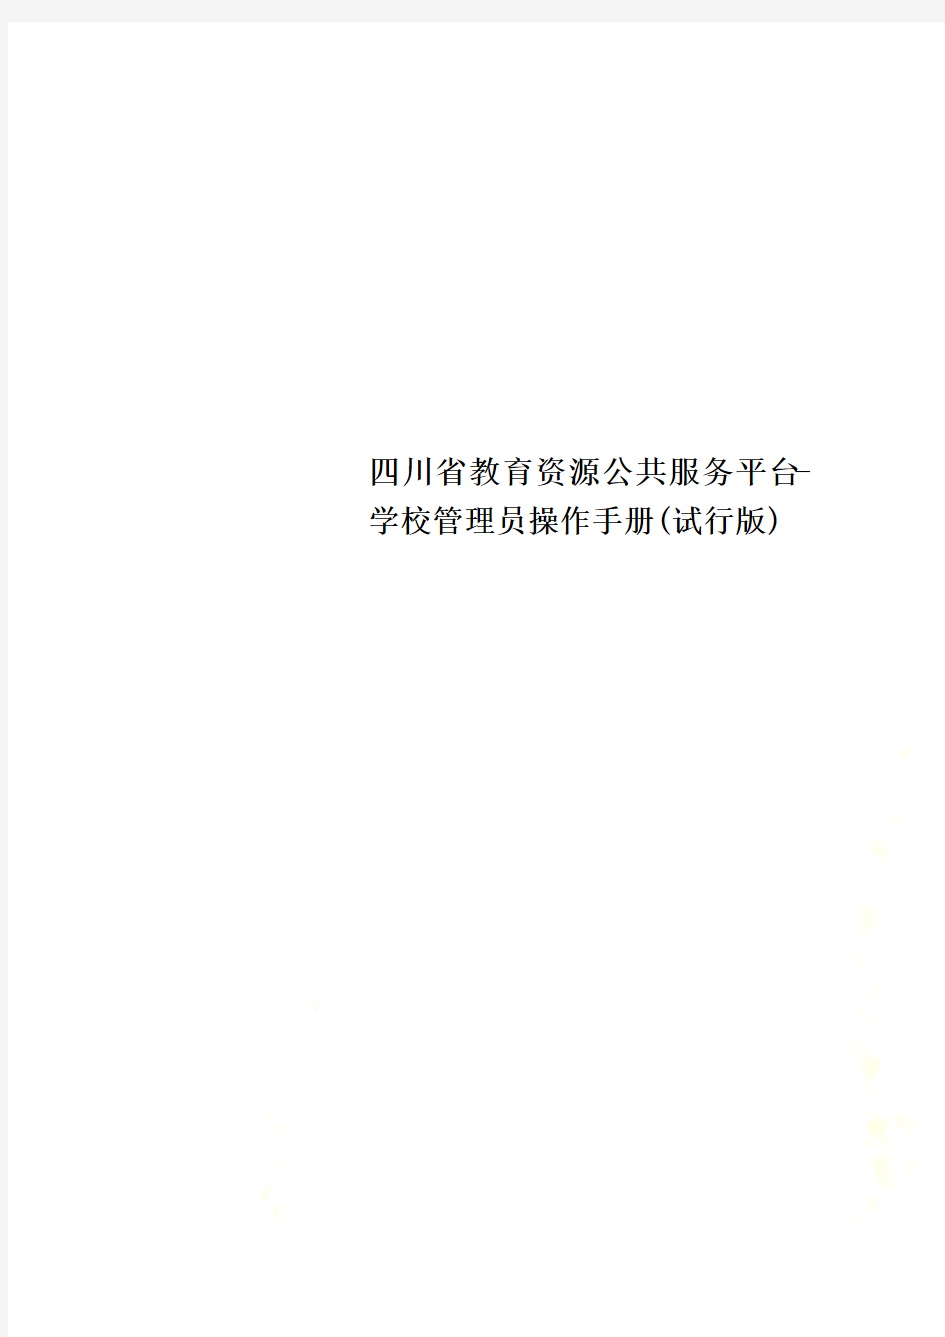 四川省教育资源公共服务平台-学校管理员操作手册(试行版)